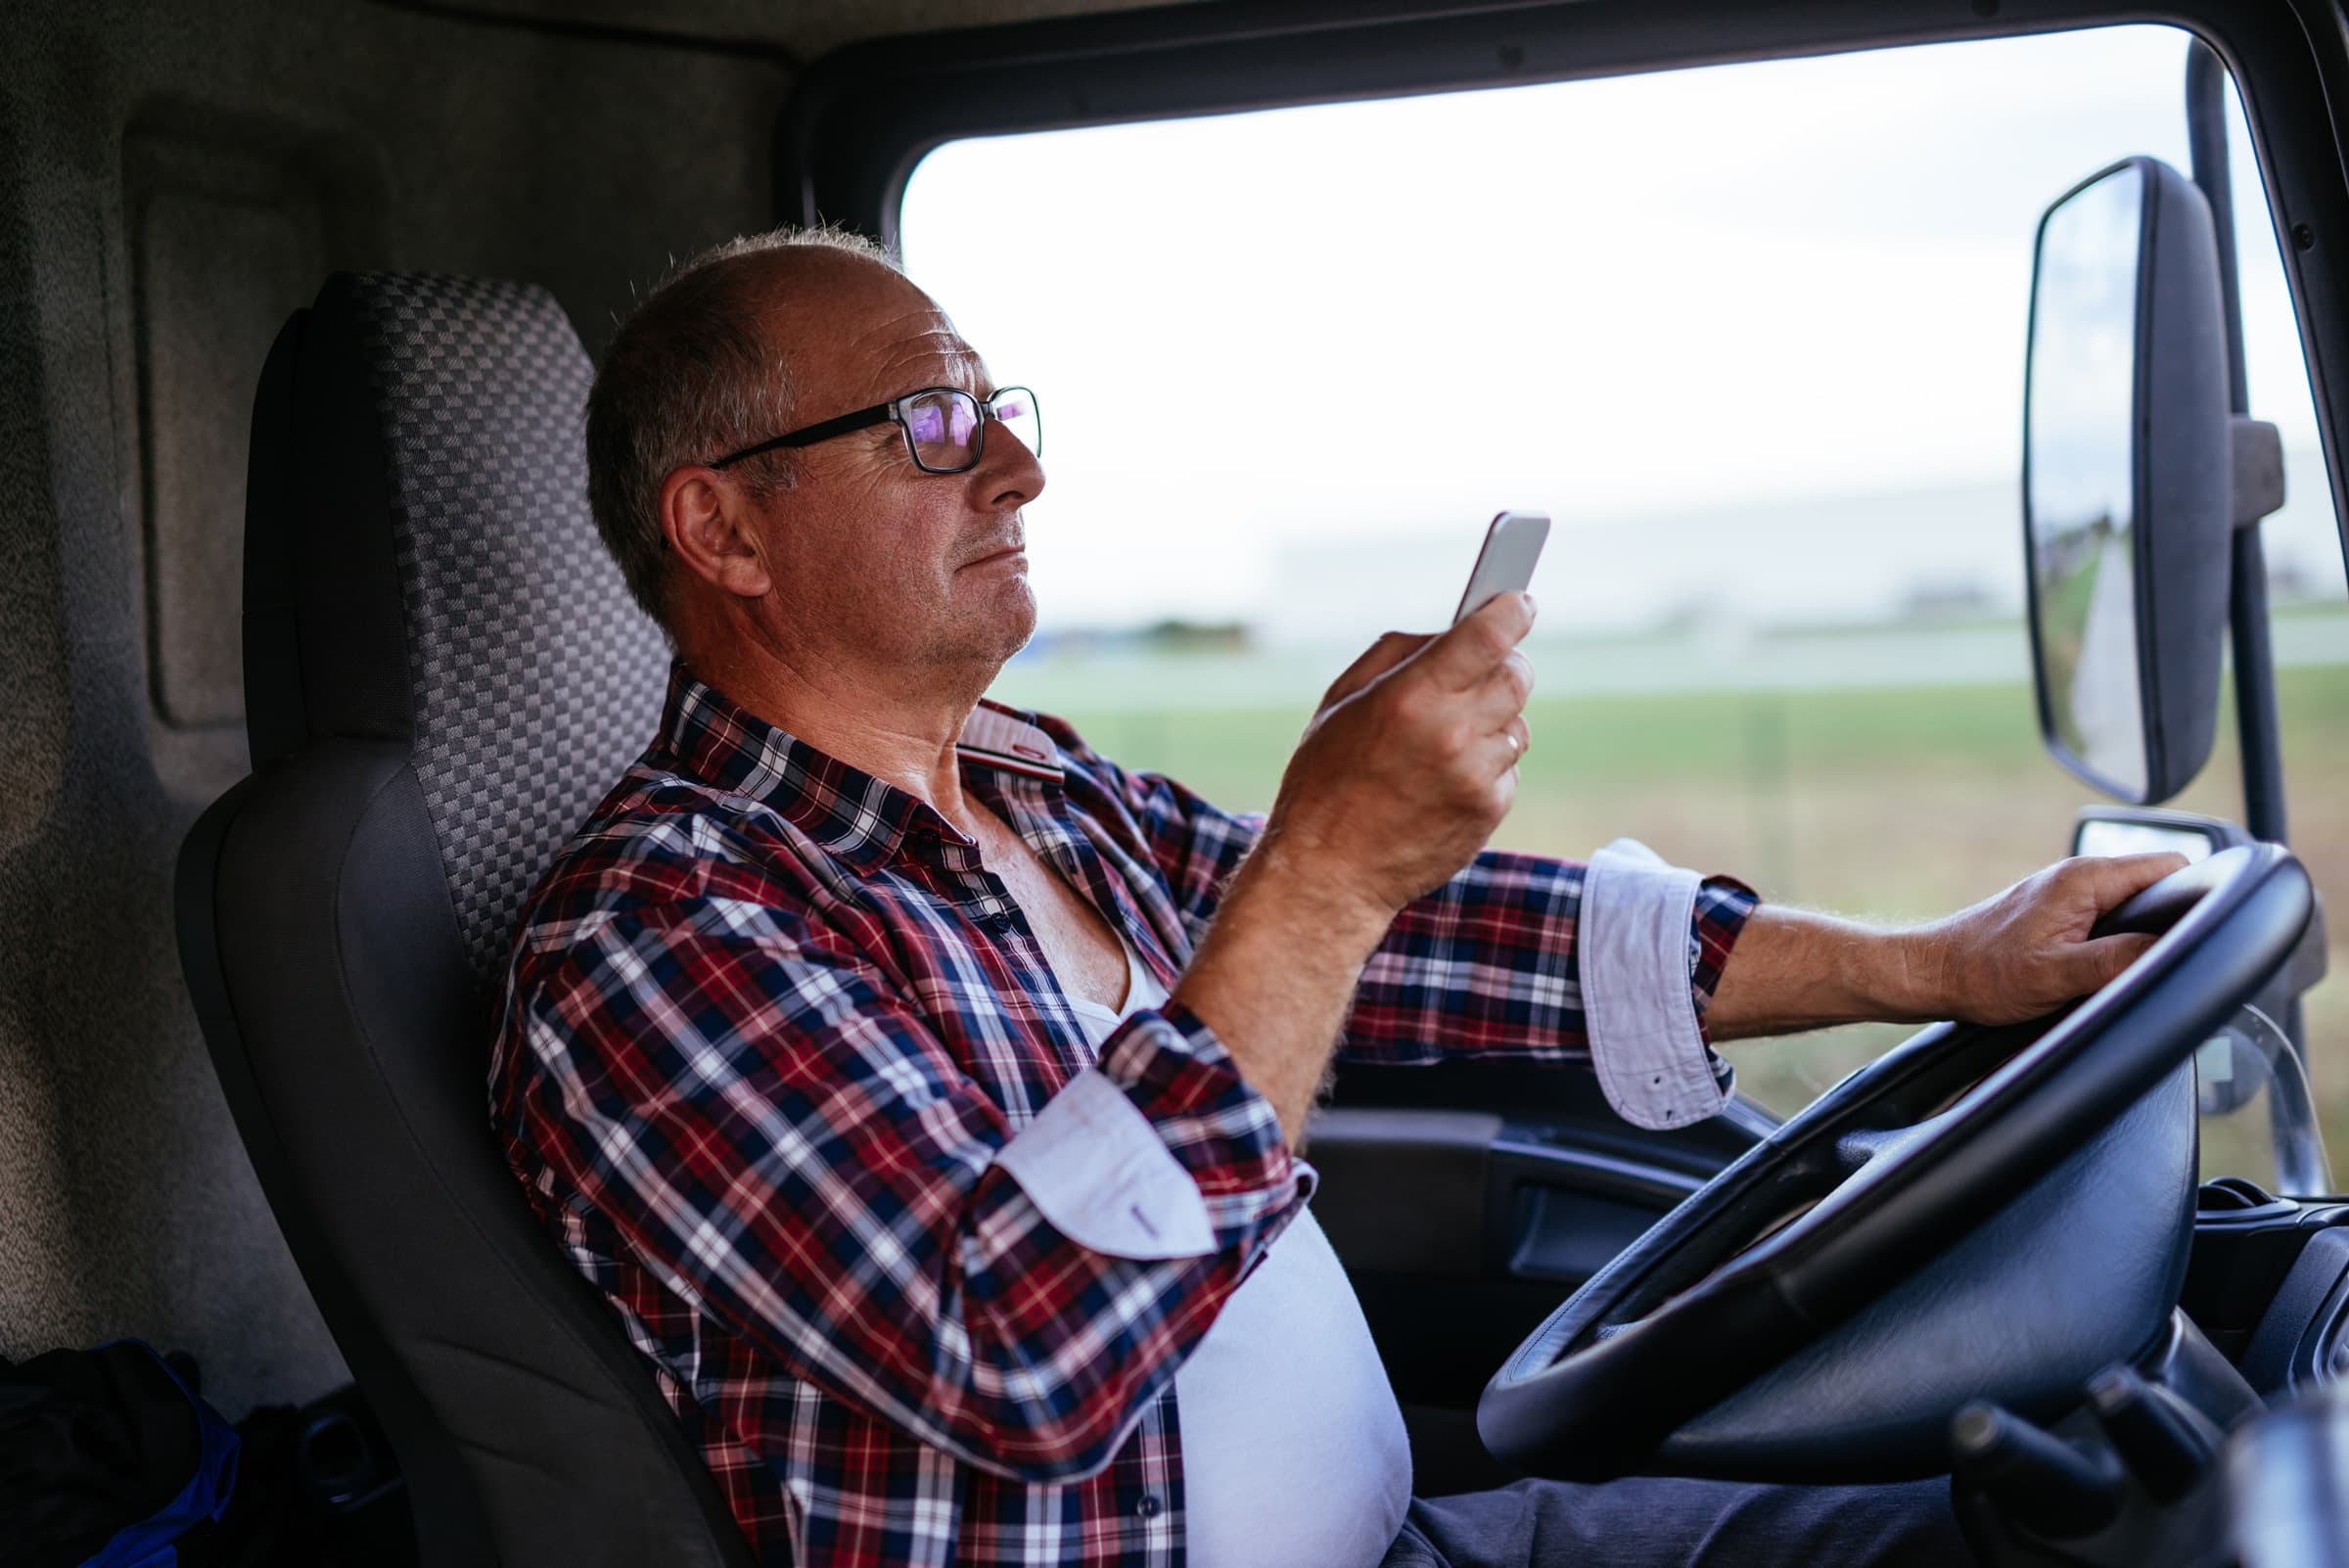 https://cdn2.hubspot.net/hubfs/465242/Truck-Driver-Looking-At-Phone-While-Driving.jpg